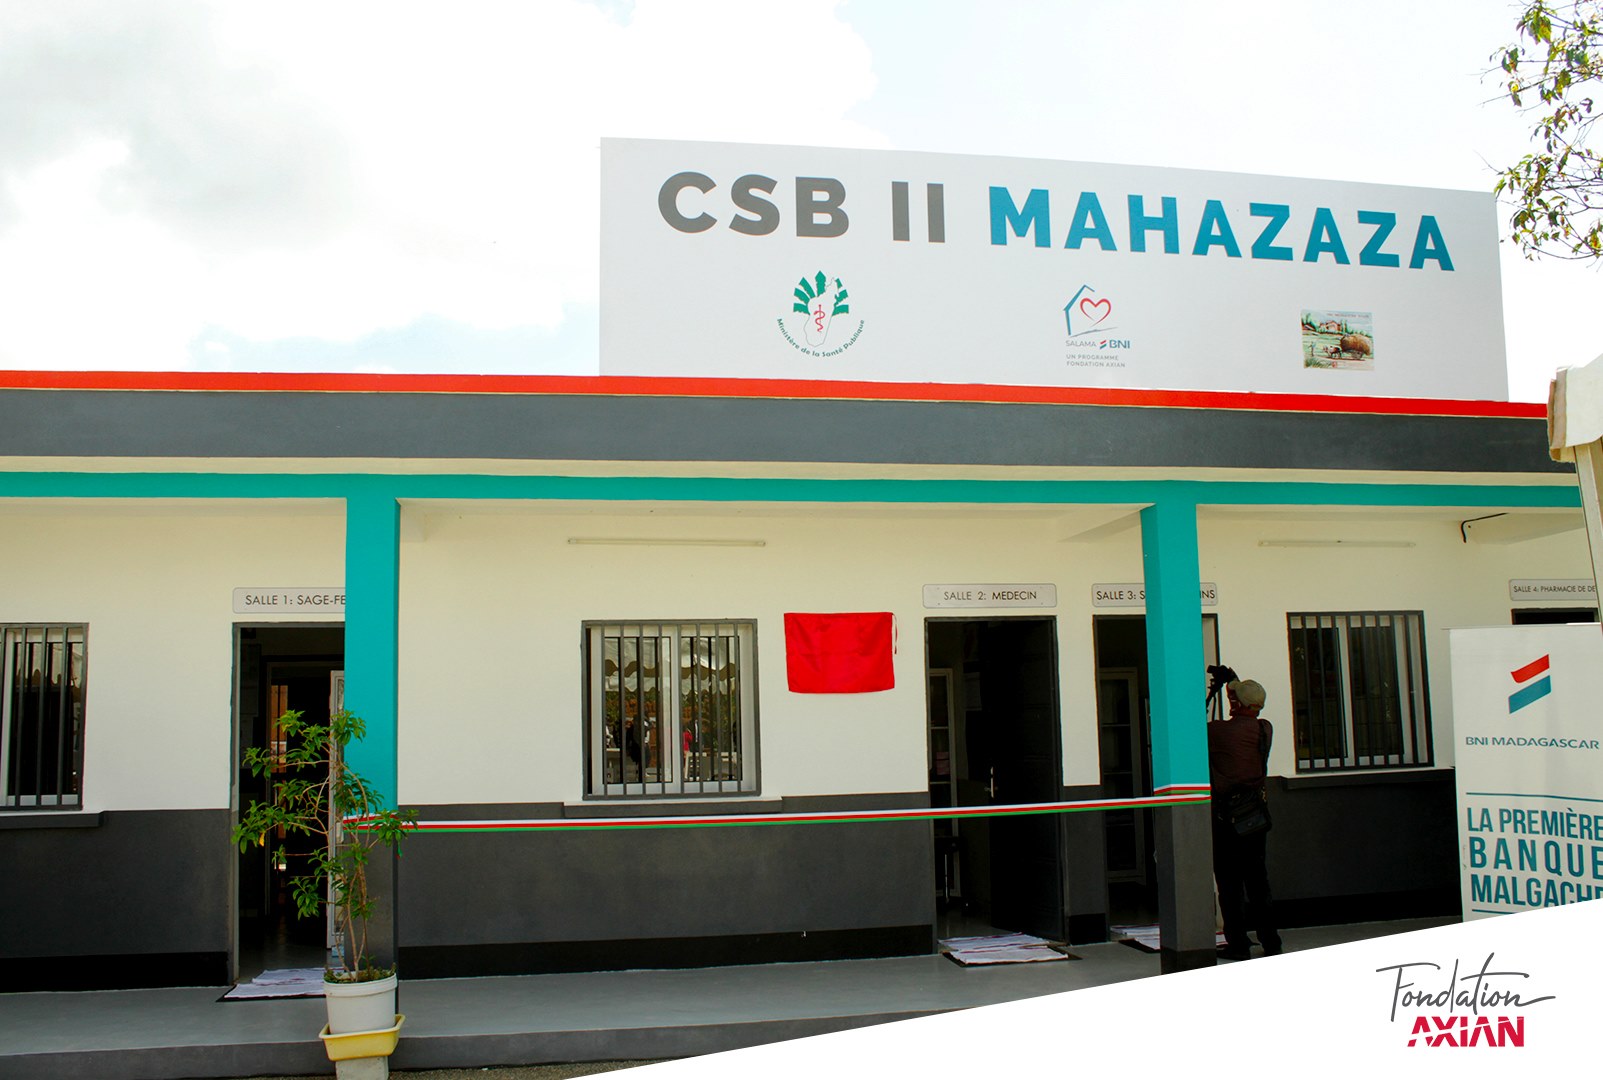 Kaominina Antanetibe Mahazaza – Nahazo CSB II vaovao